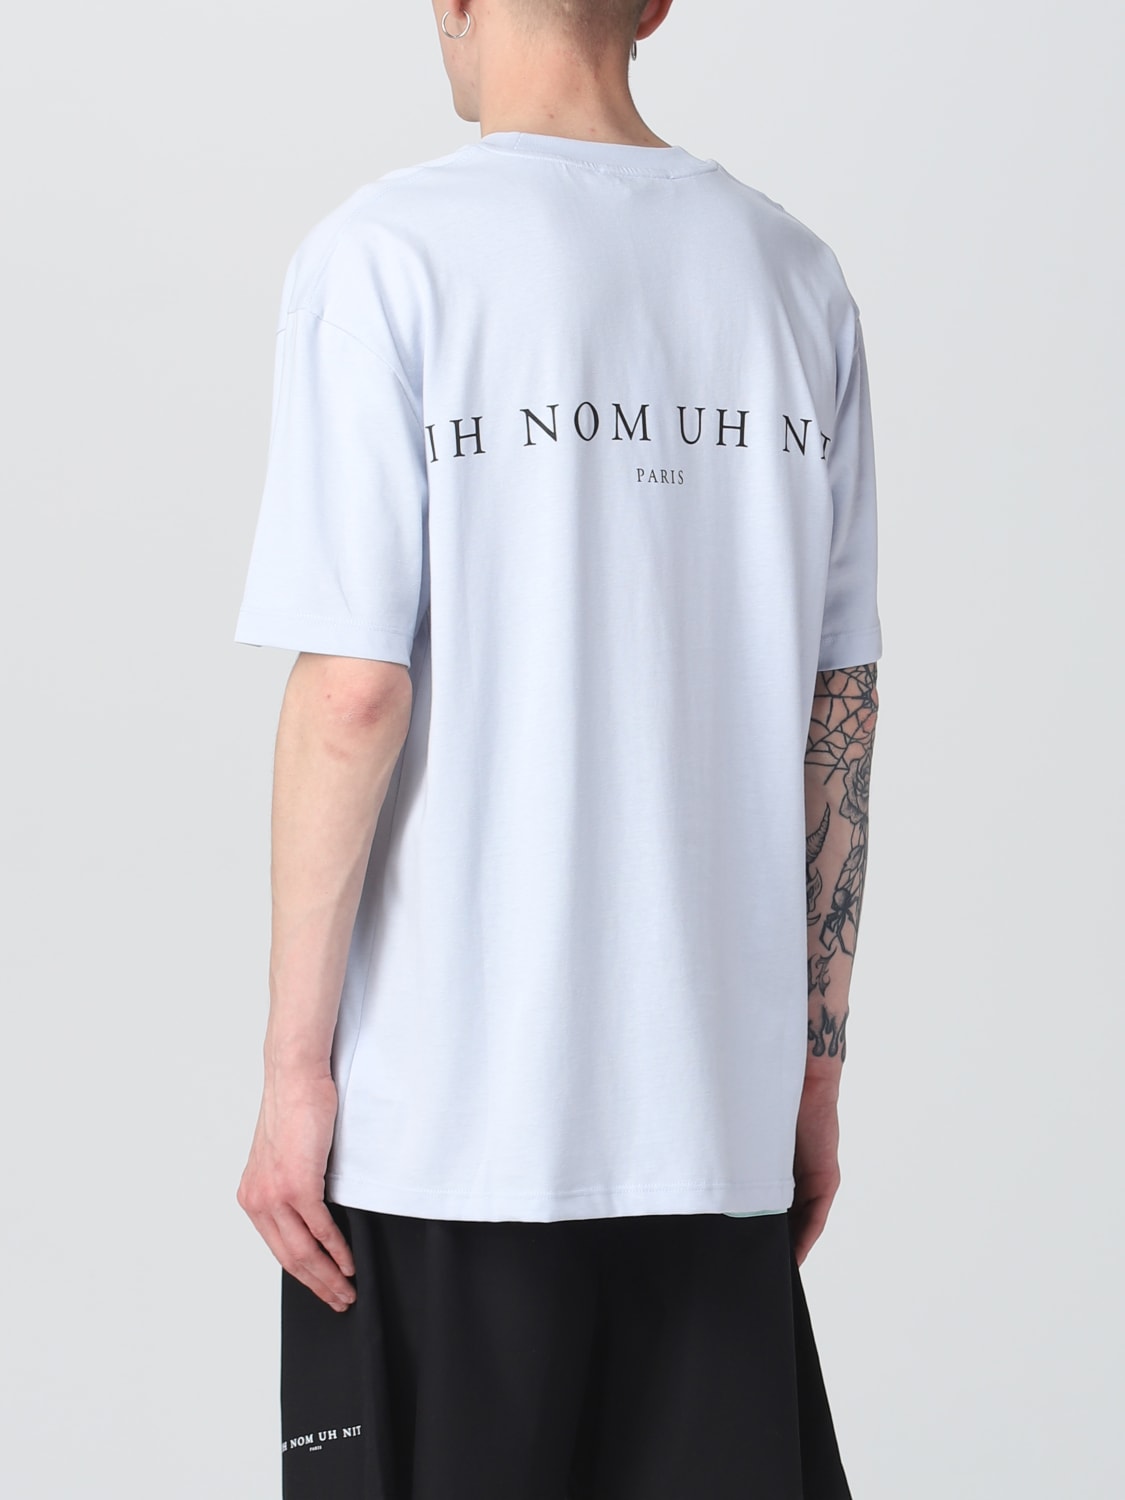 Ih nom uh nit ロゴtシャツ - Tシャツ/カットソー(半袖/袖なし)